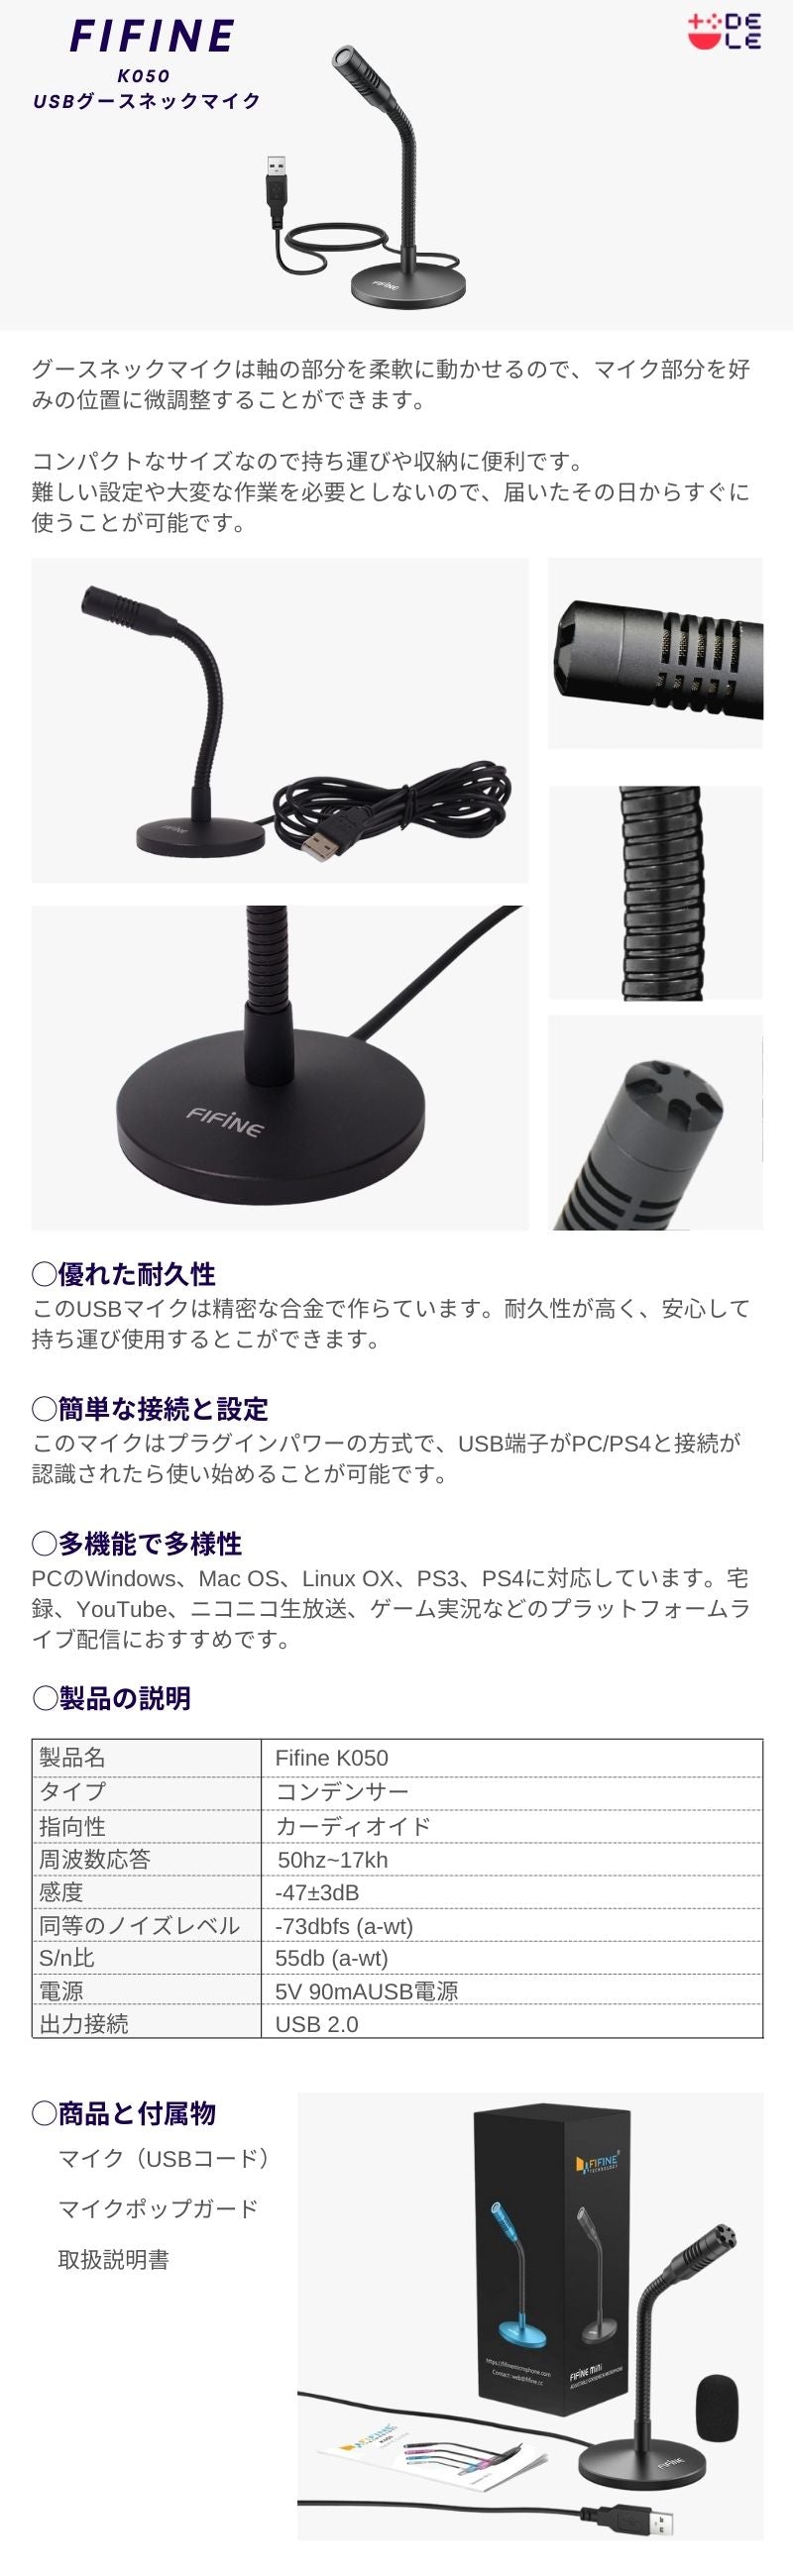 FIFINE K050 USBグースネックマイク 日本正規代理店 | dele.io